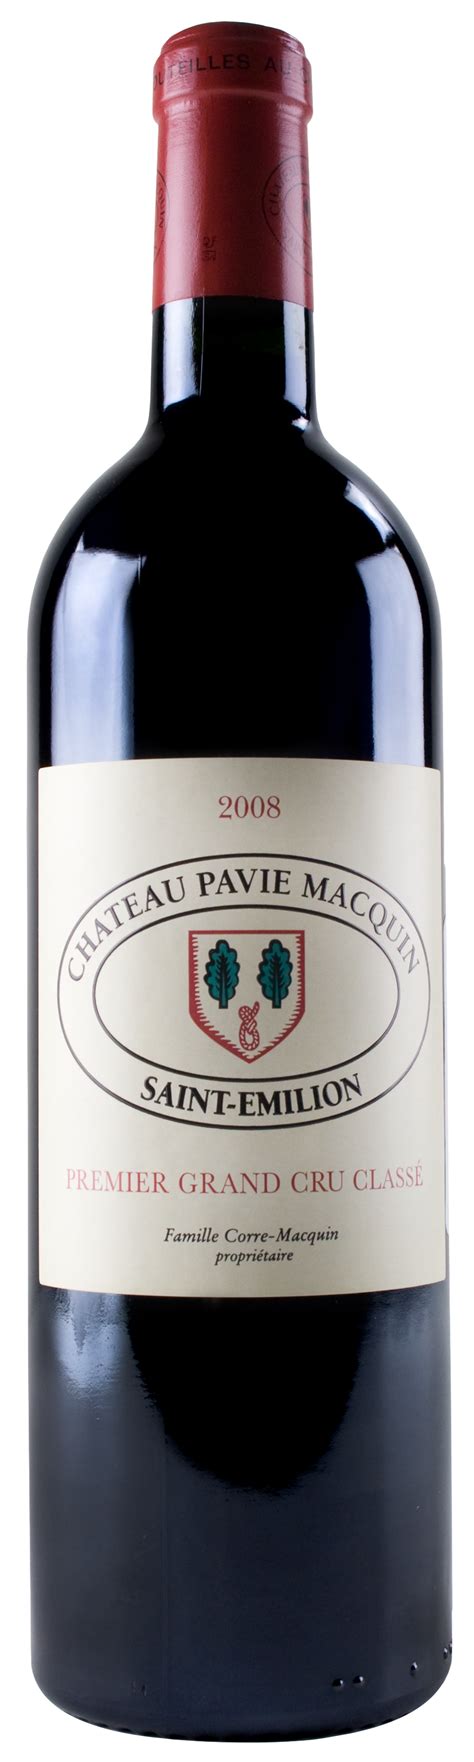 Le terroir du château pavie macquin. 2008 Chateau Pavie Macquin | Wine Library